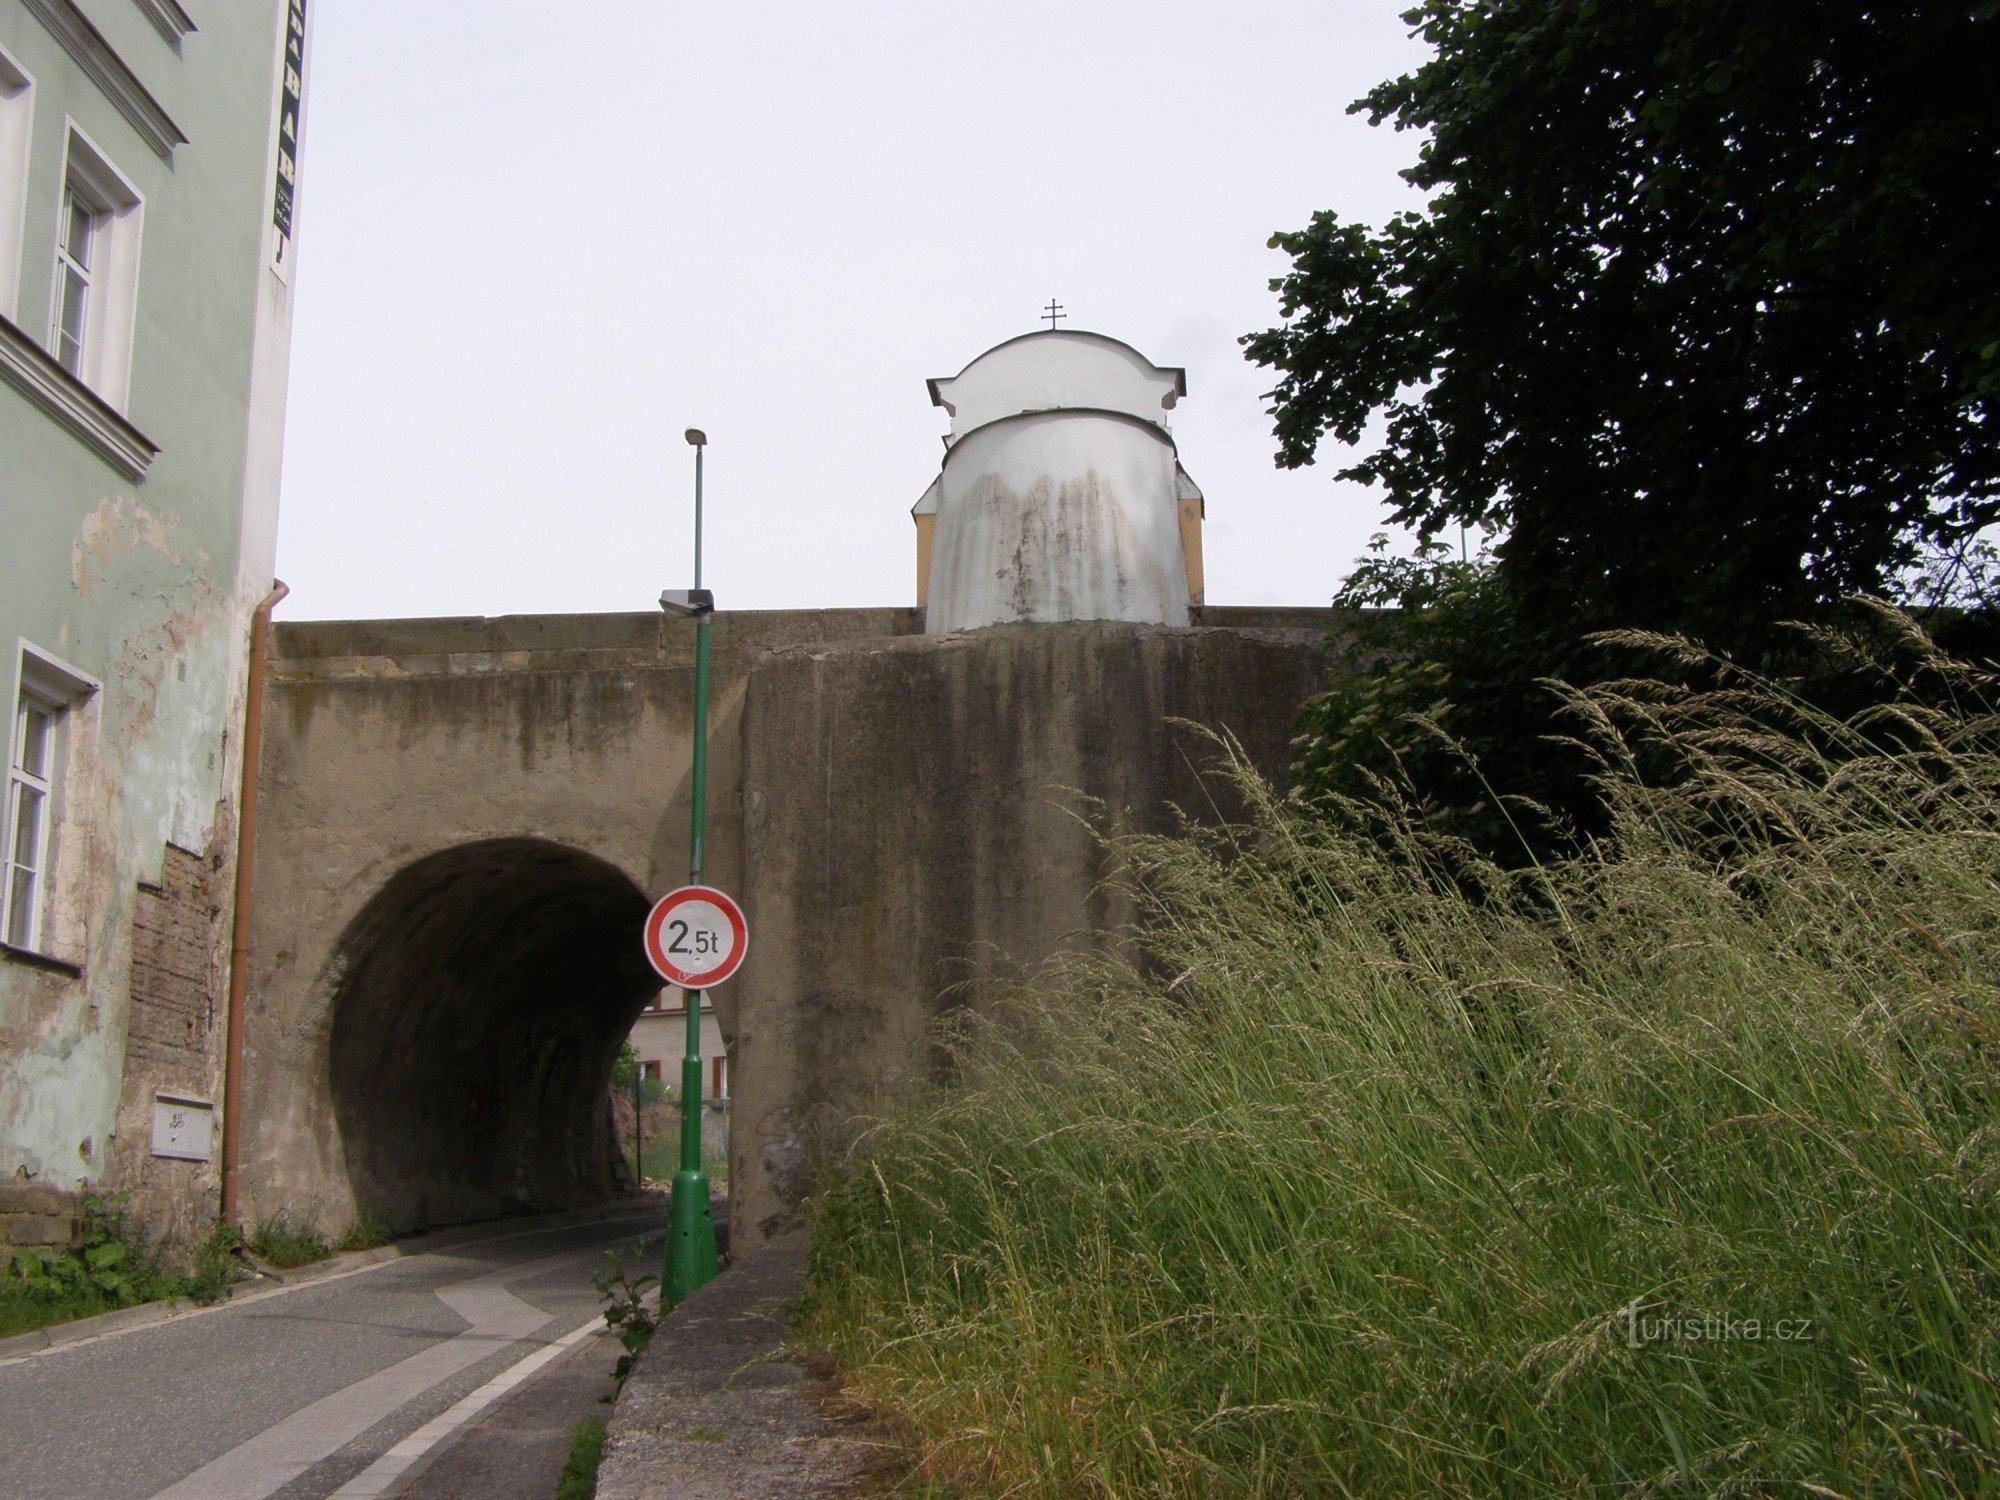 Jaroměř - en bro med ett kapell